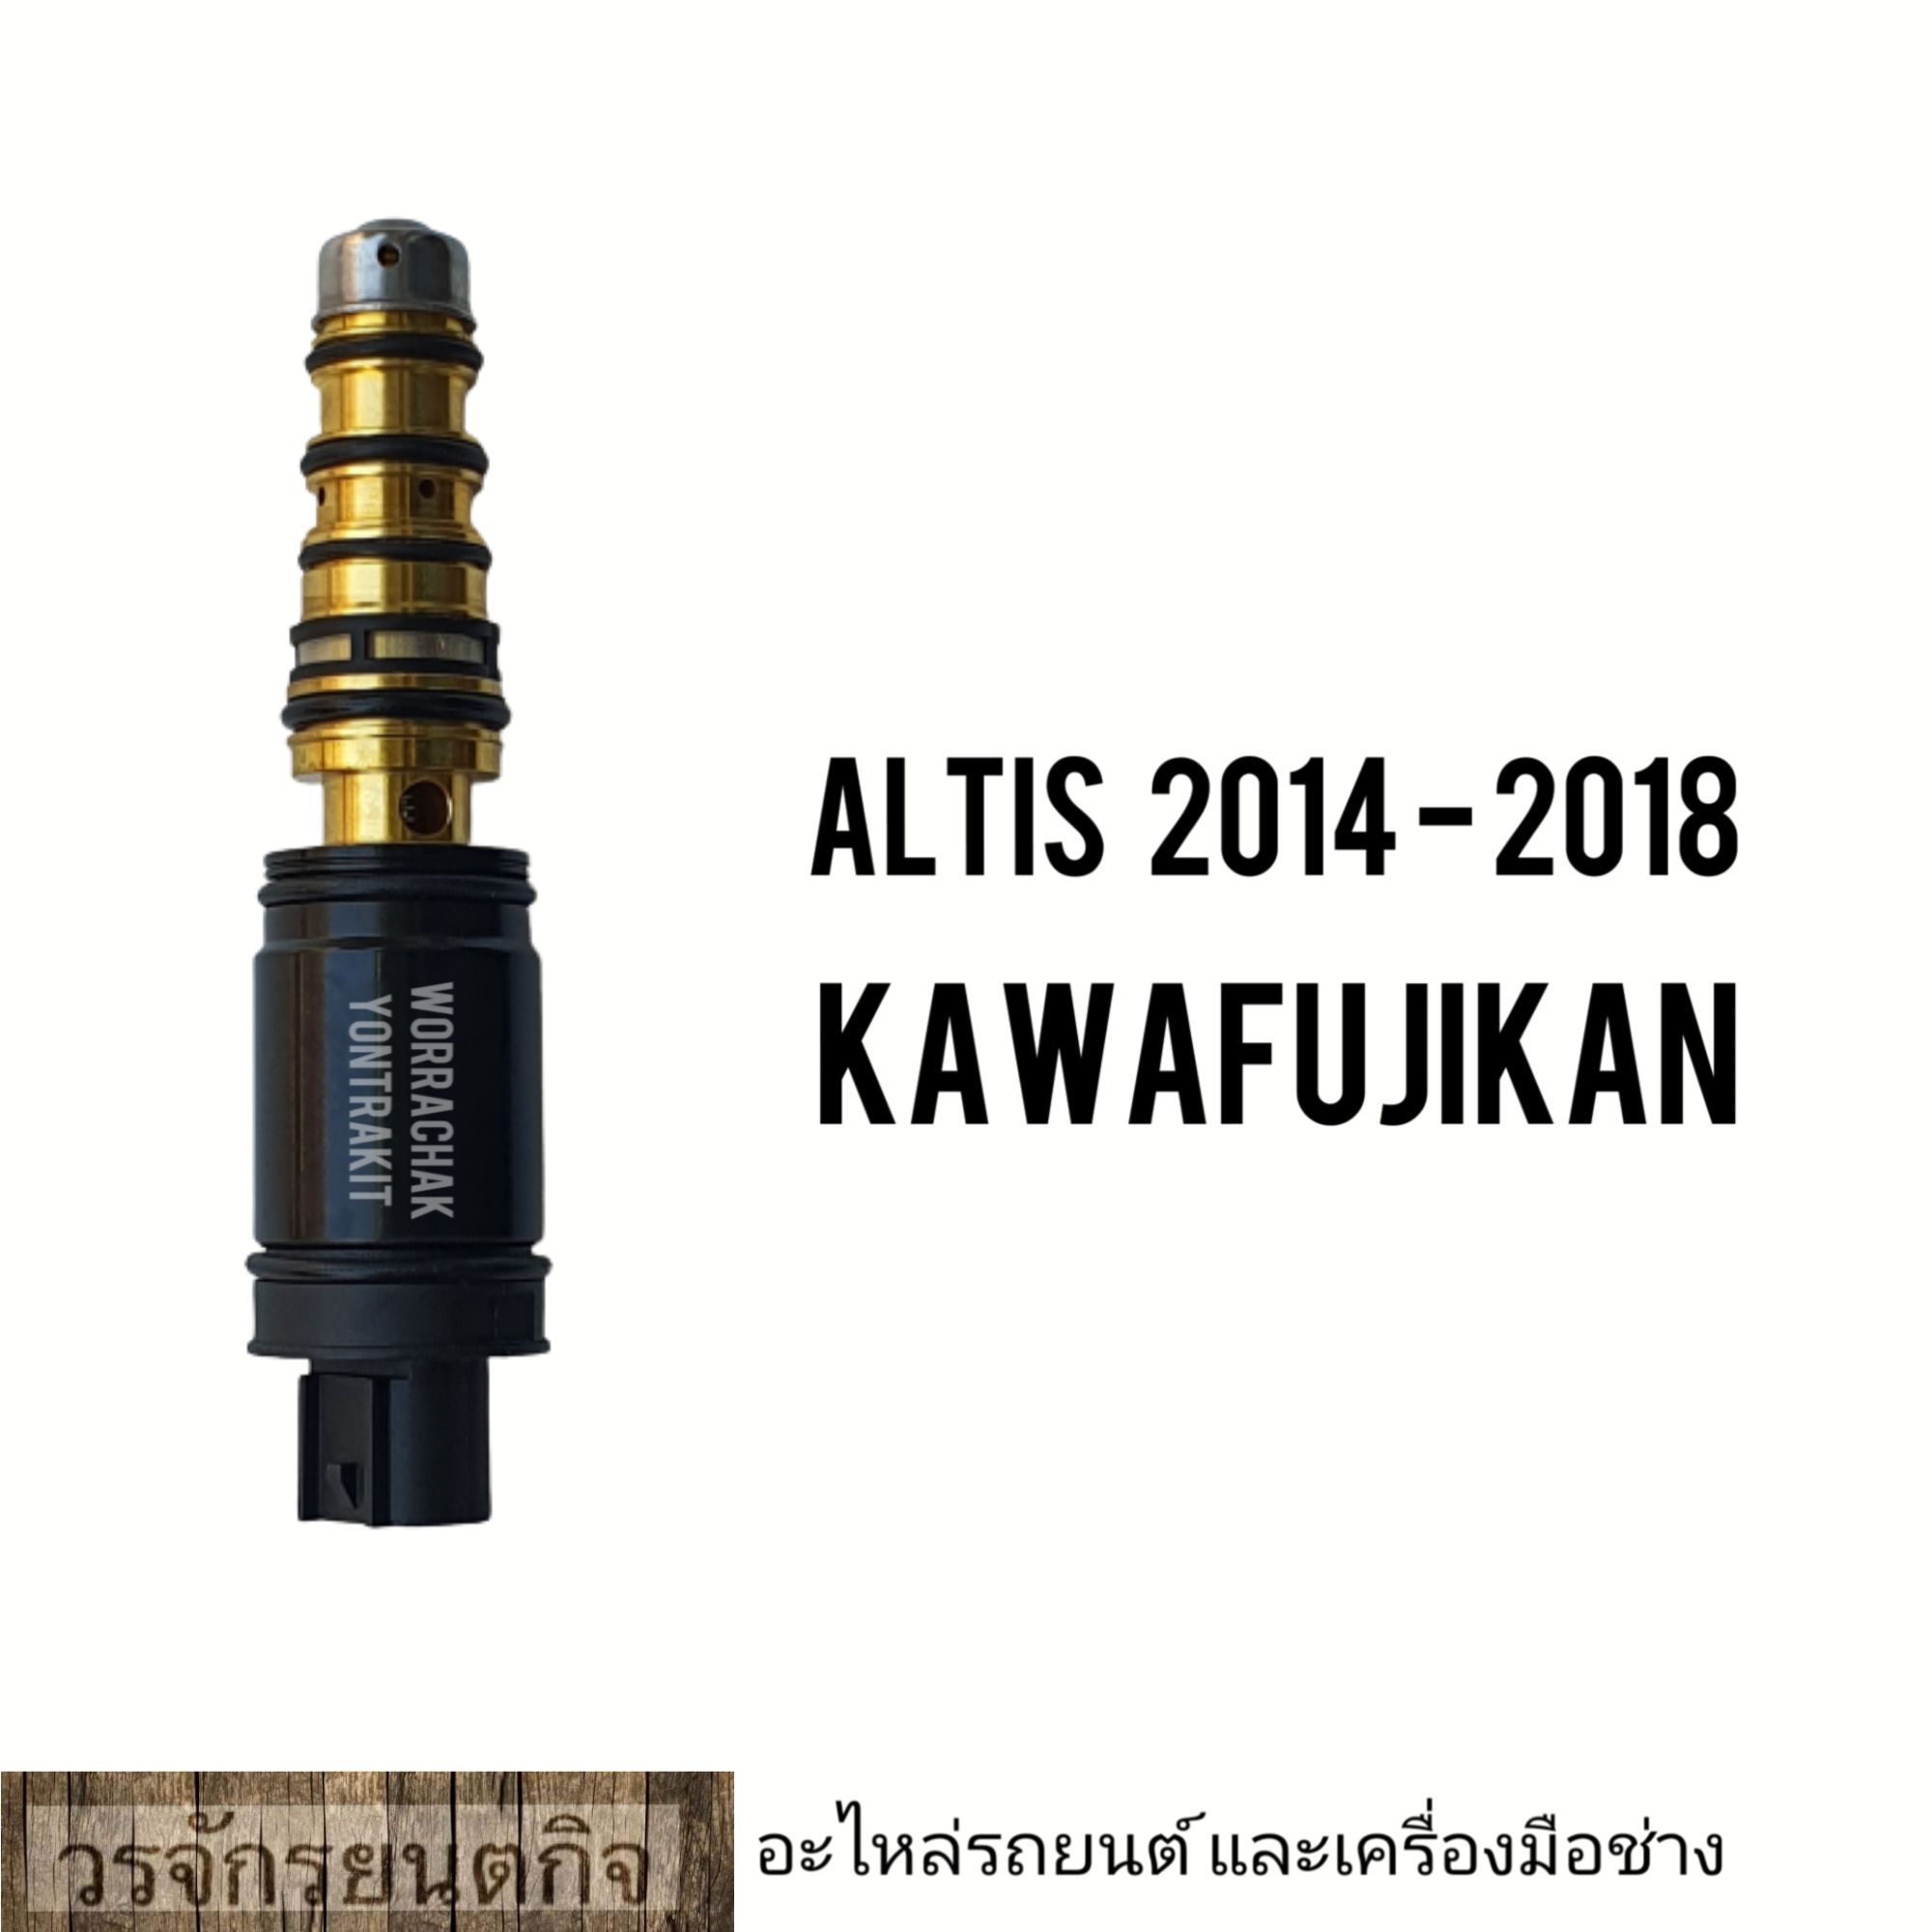 วาล์วคอนโทรลแอร์ Altis 2014 - 2018 สินค้าคุณภาพสูง KAWAFUJIKAN